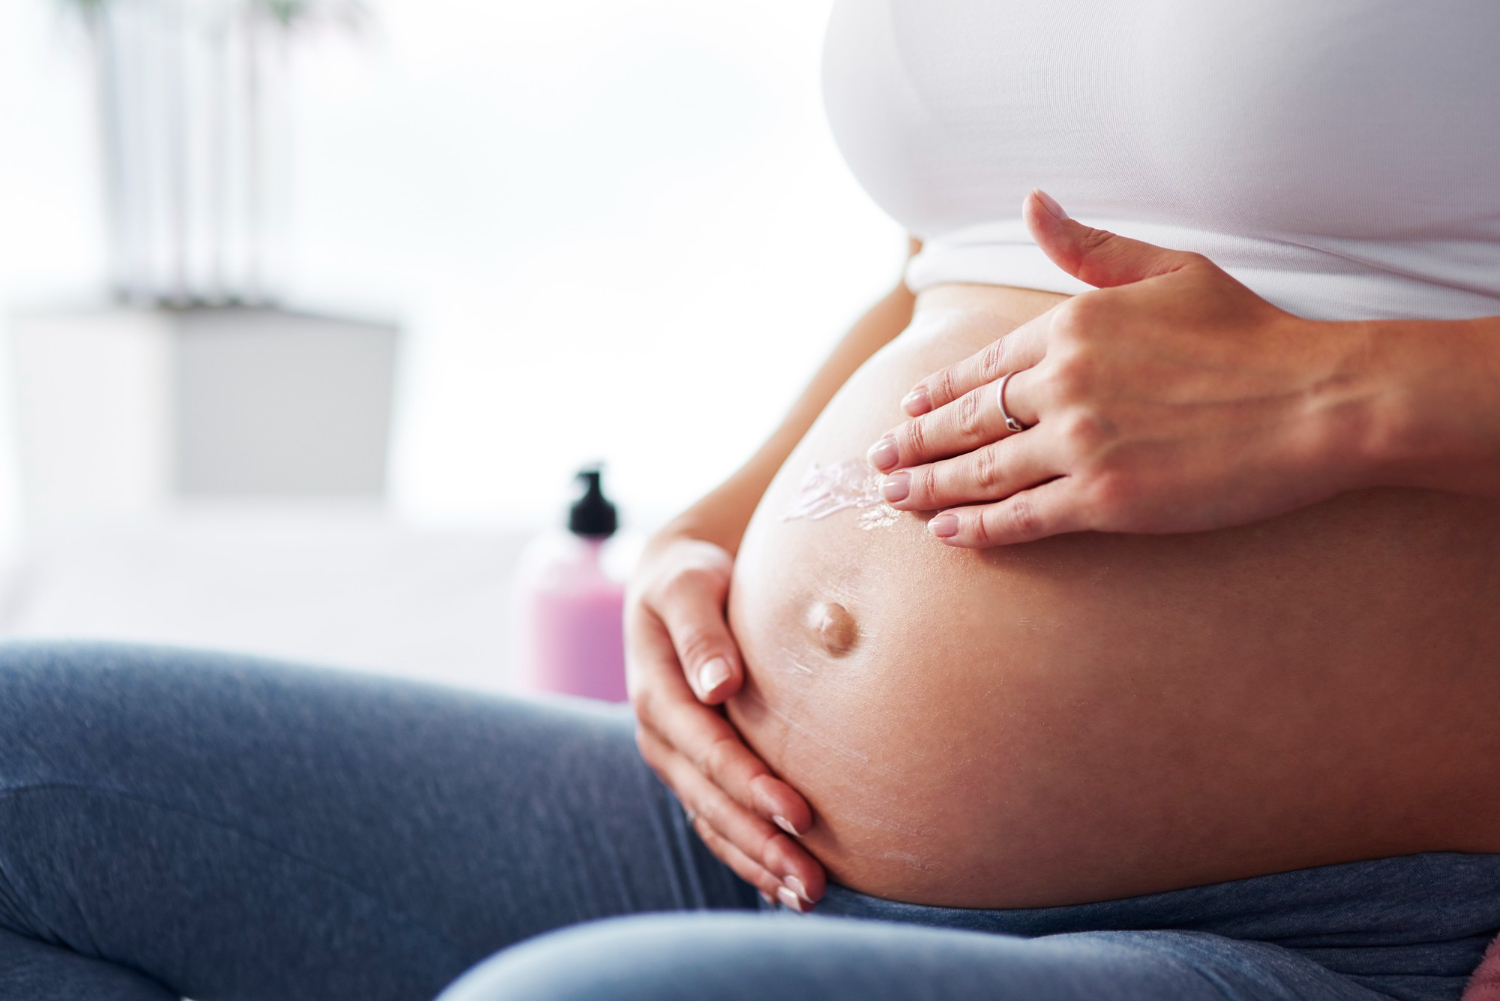 Como prevenir melasma na gravidez? Veja guia de cuidados com a pele durante a gestação